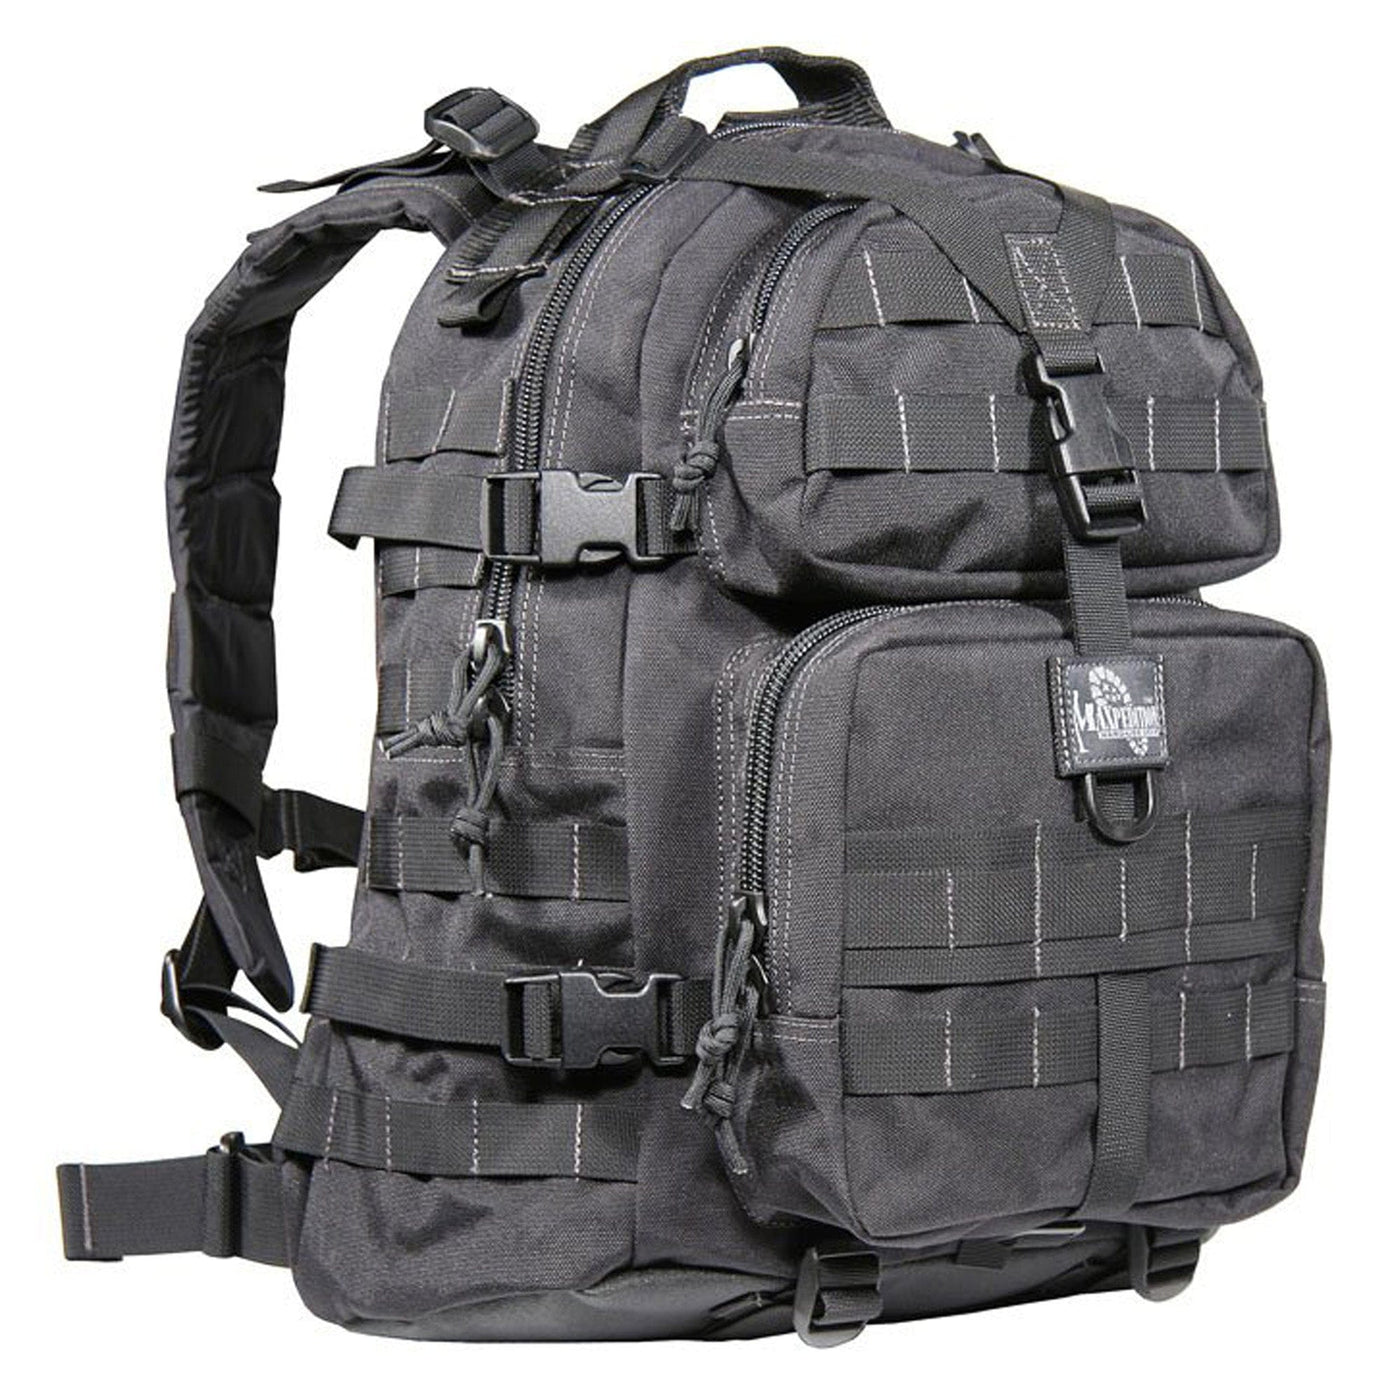 Maxpedition Maxpedition Condor-ii Backpack Blk Soft Gun Cases